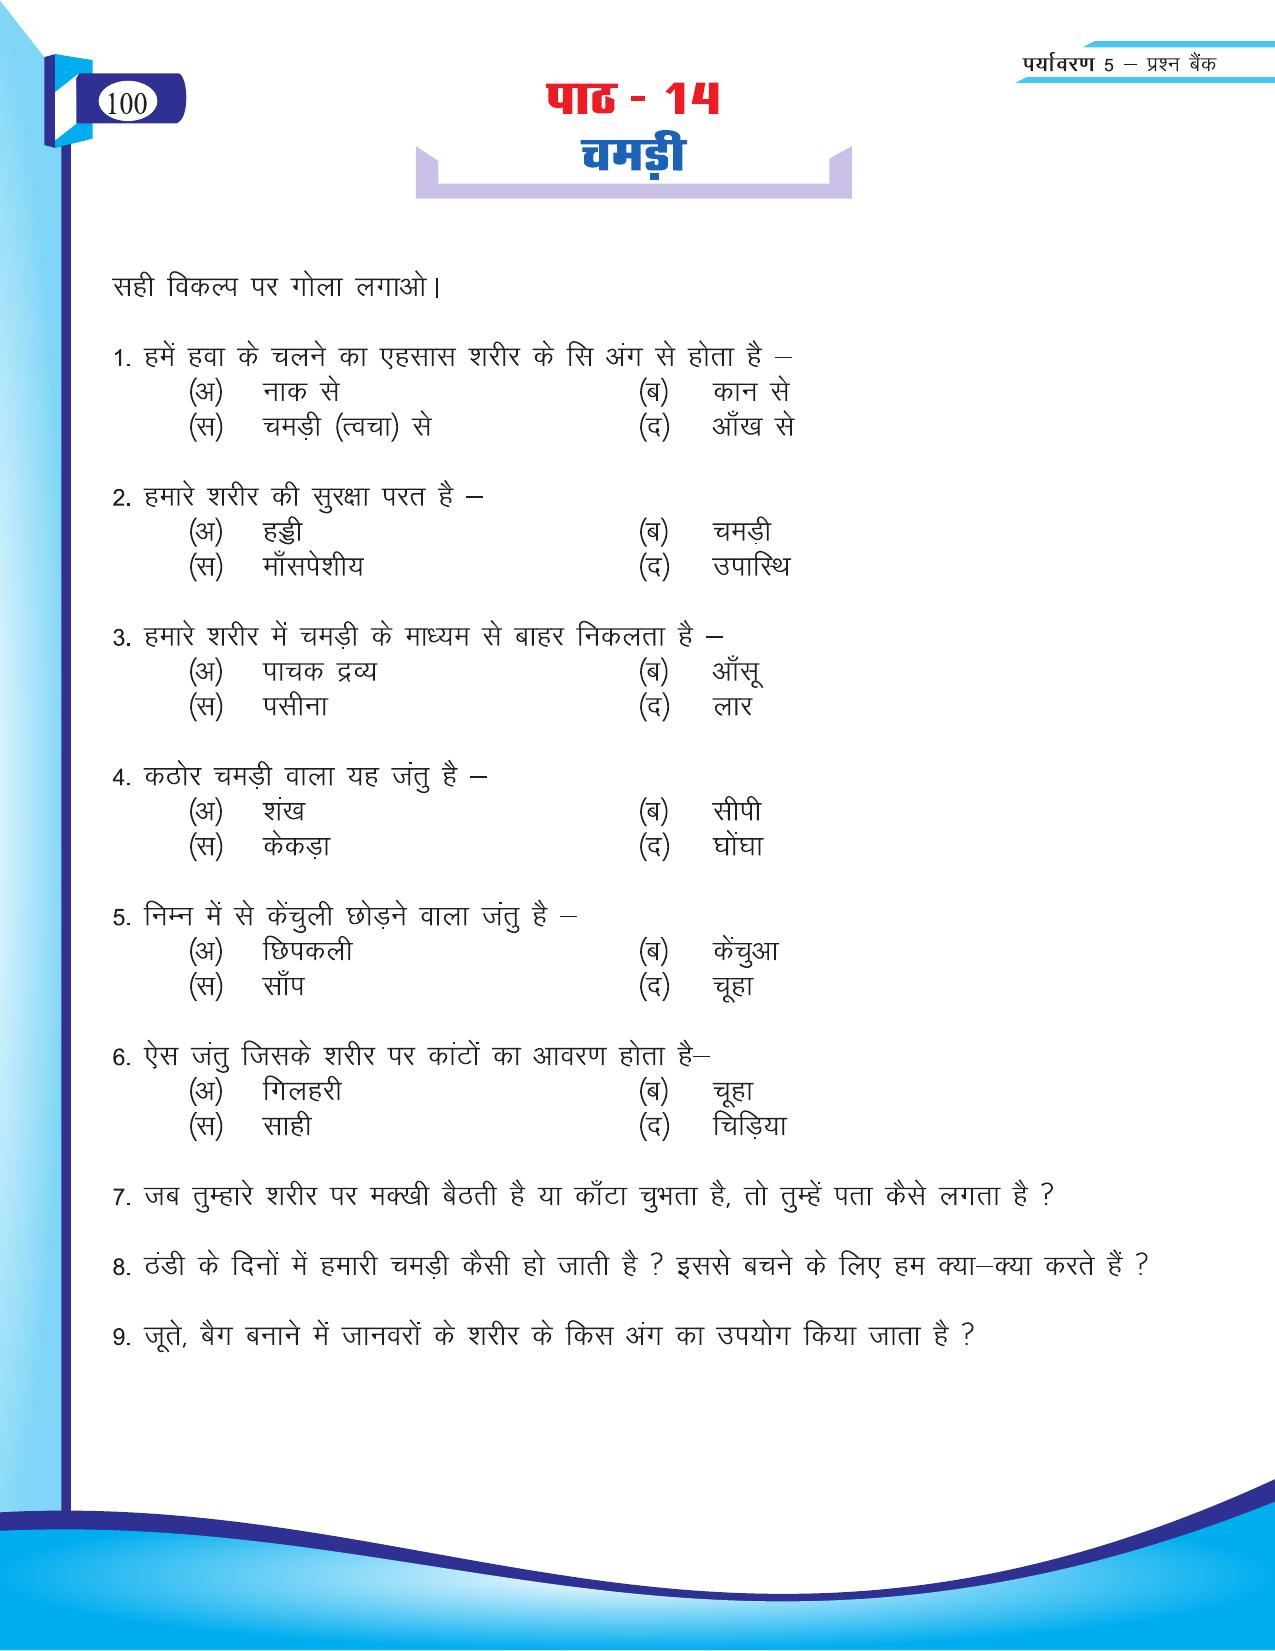 Chhattisgarh Board Class 5 EVS Question Bank 2015-16 - Page 26